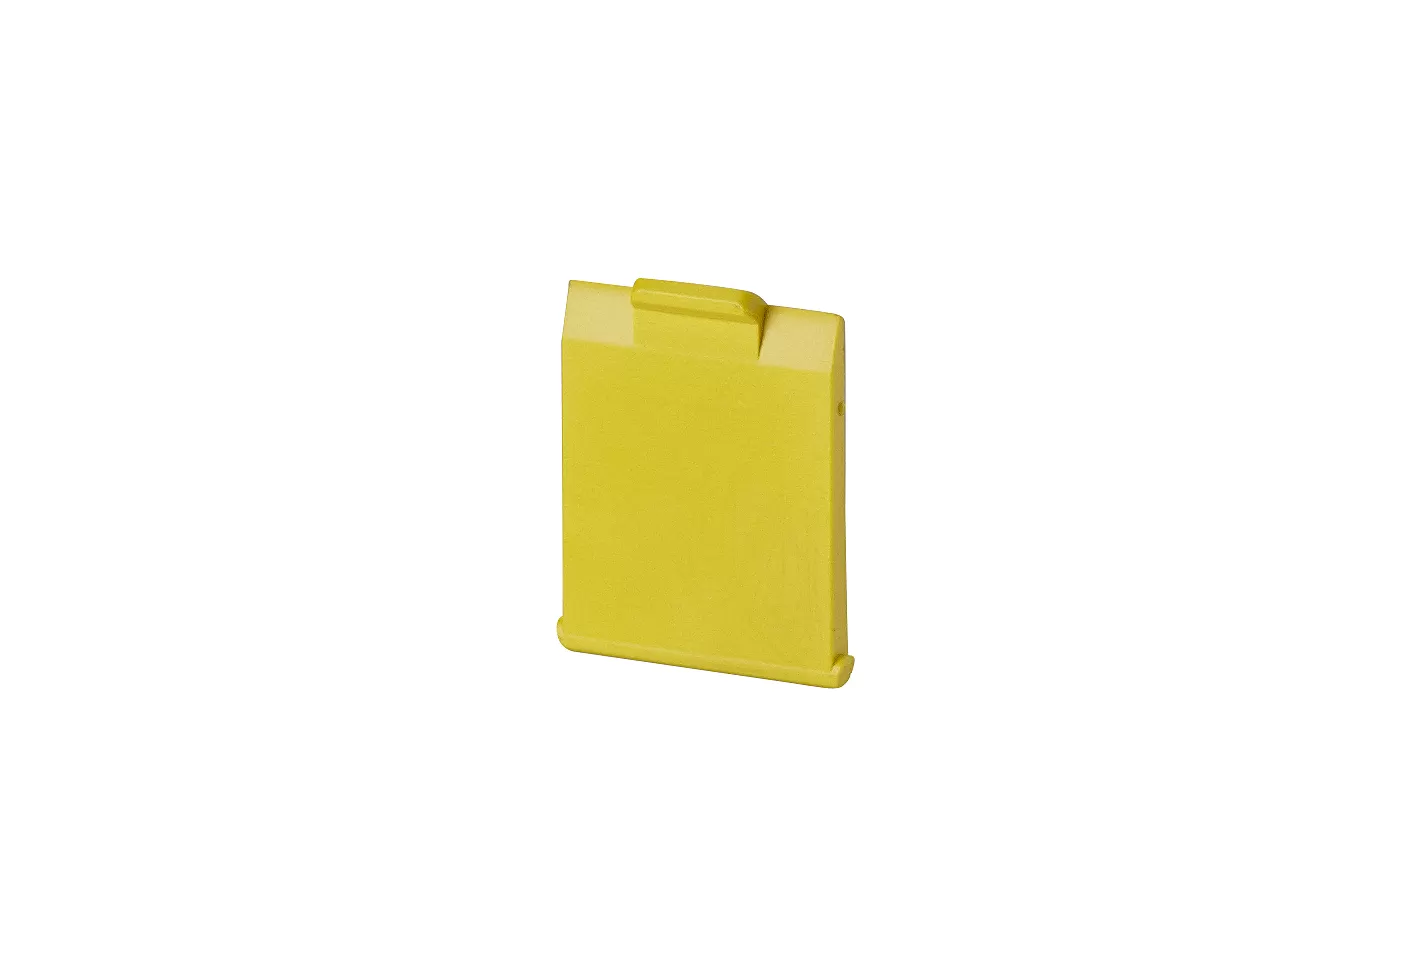 Metz Connect Staubschutzklappen für Anschlussdosen gelb 820394-0105-I